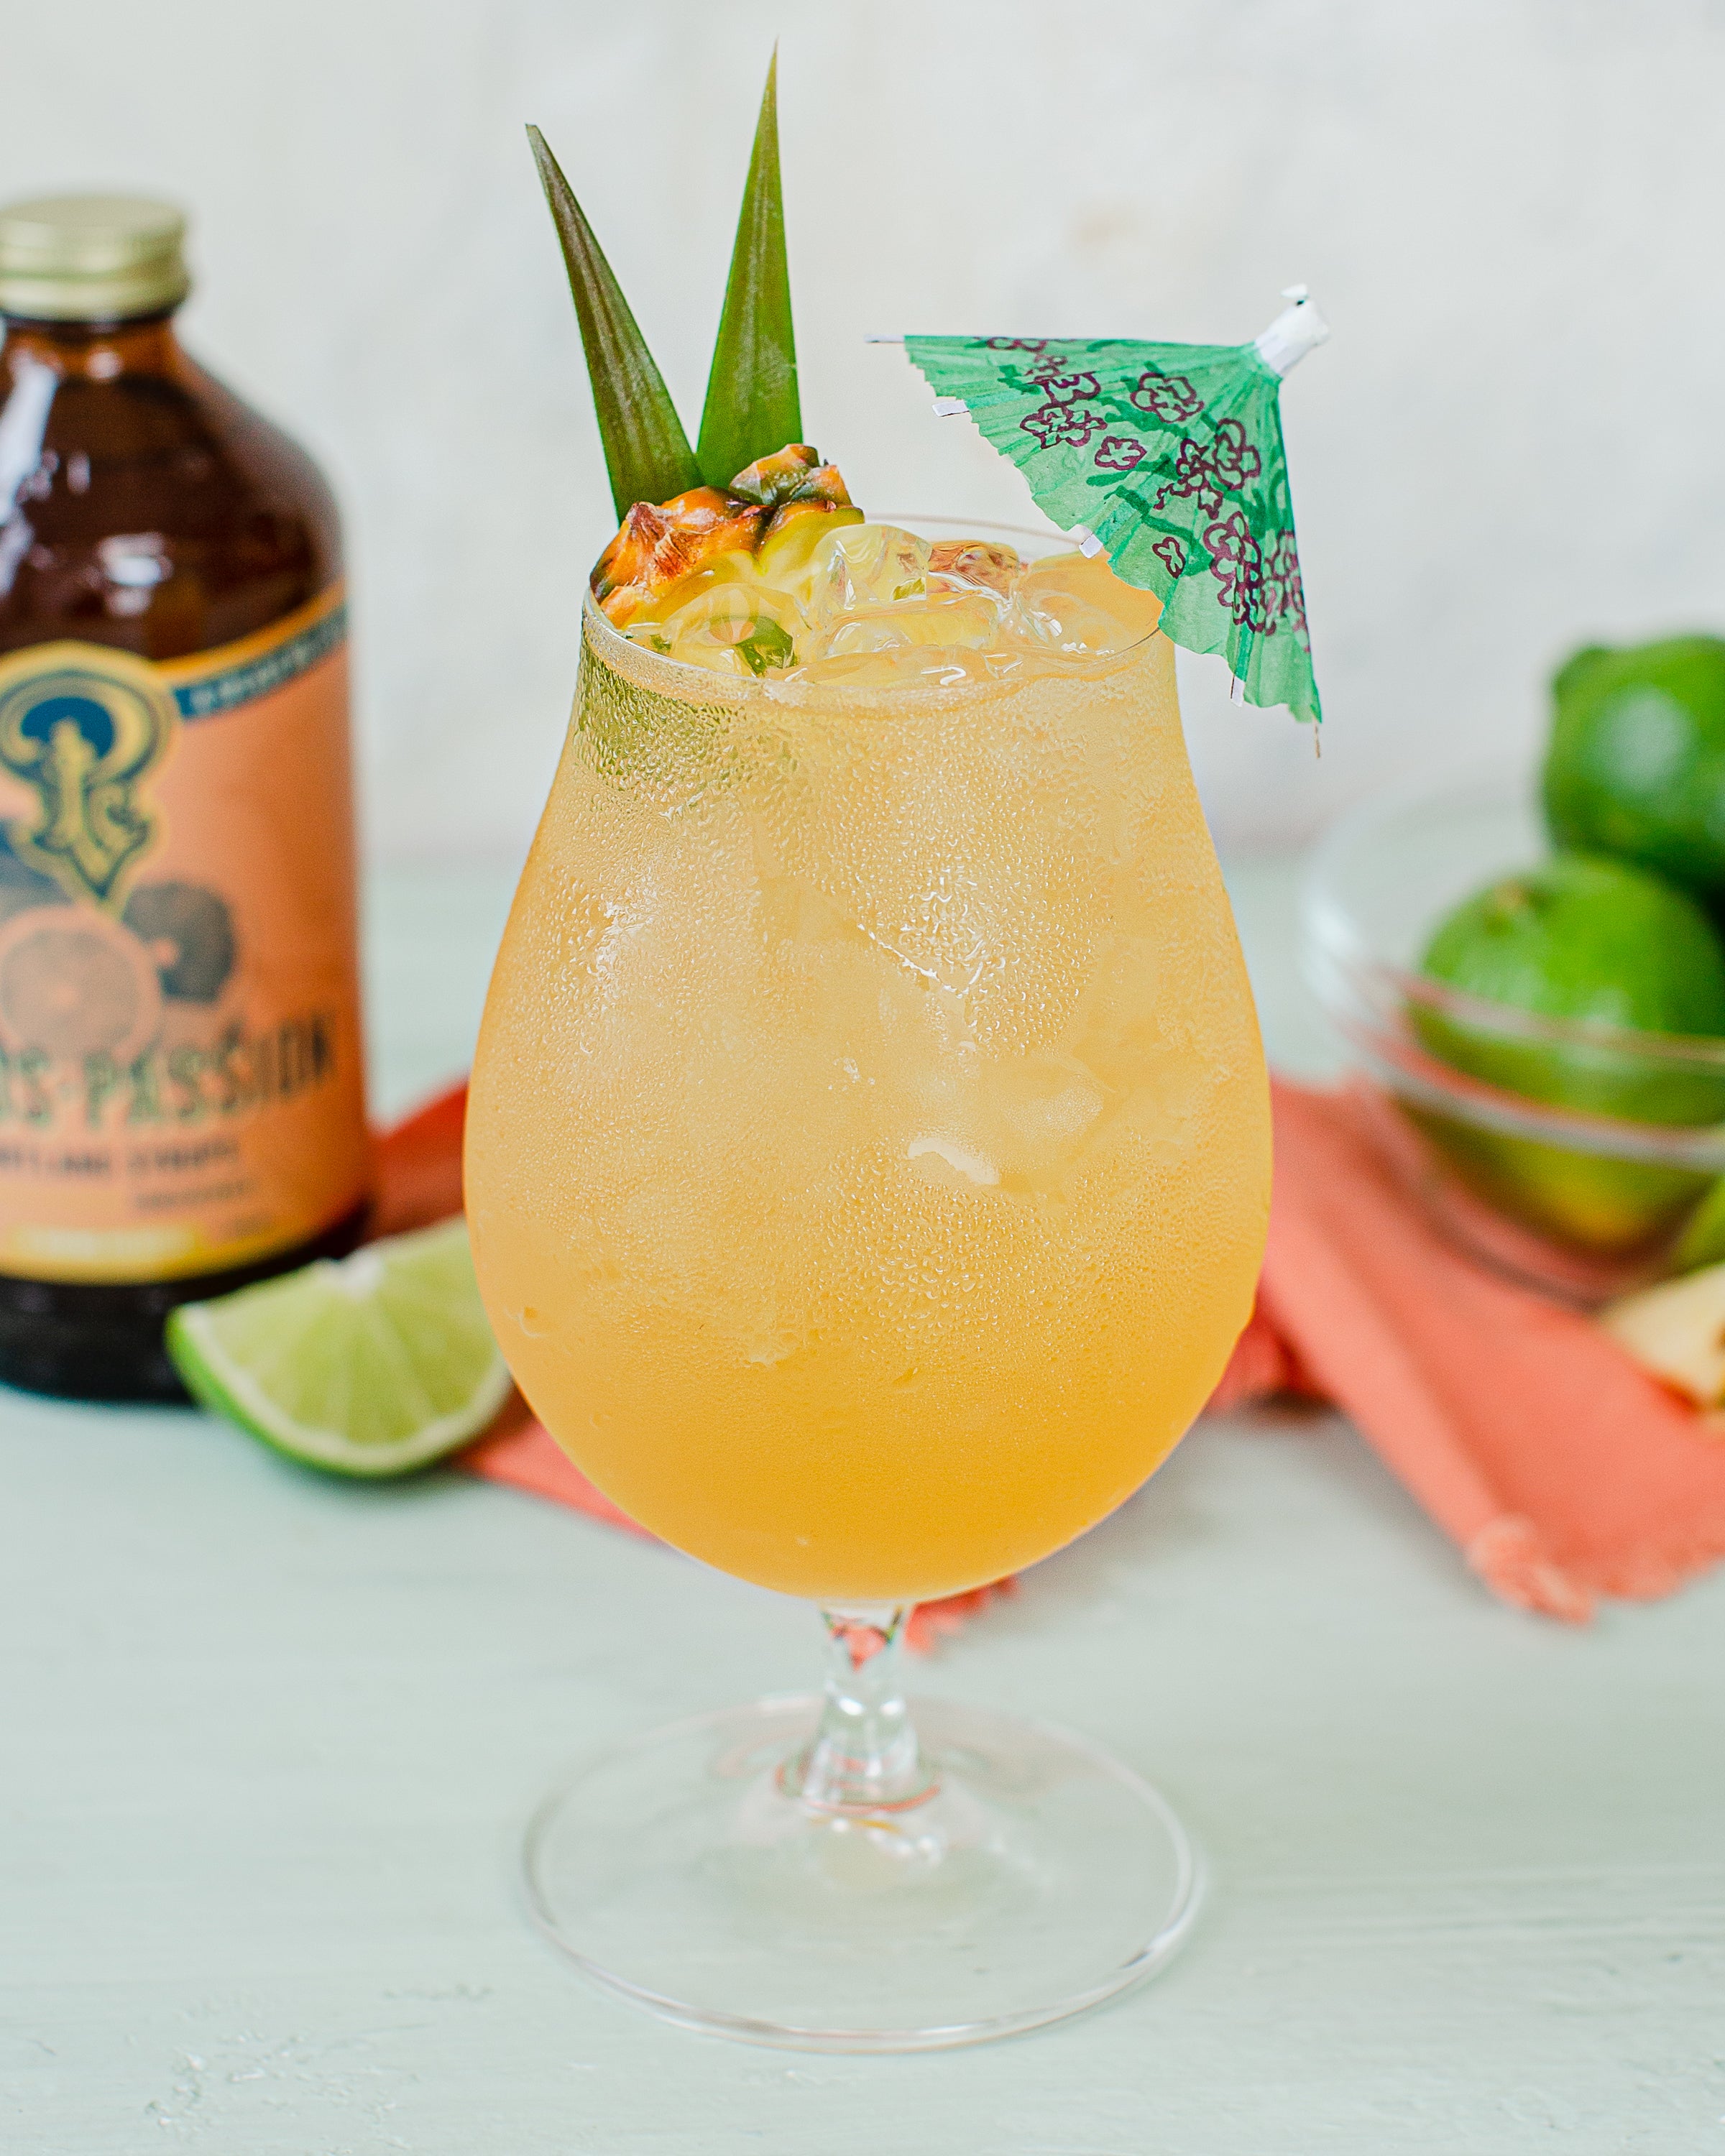 Citrus passionfruit cocktail with umbrella